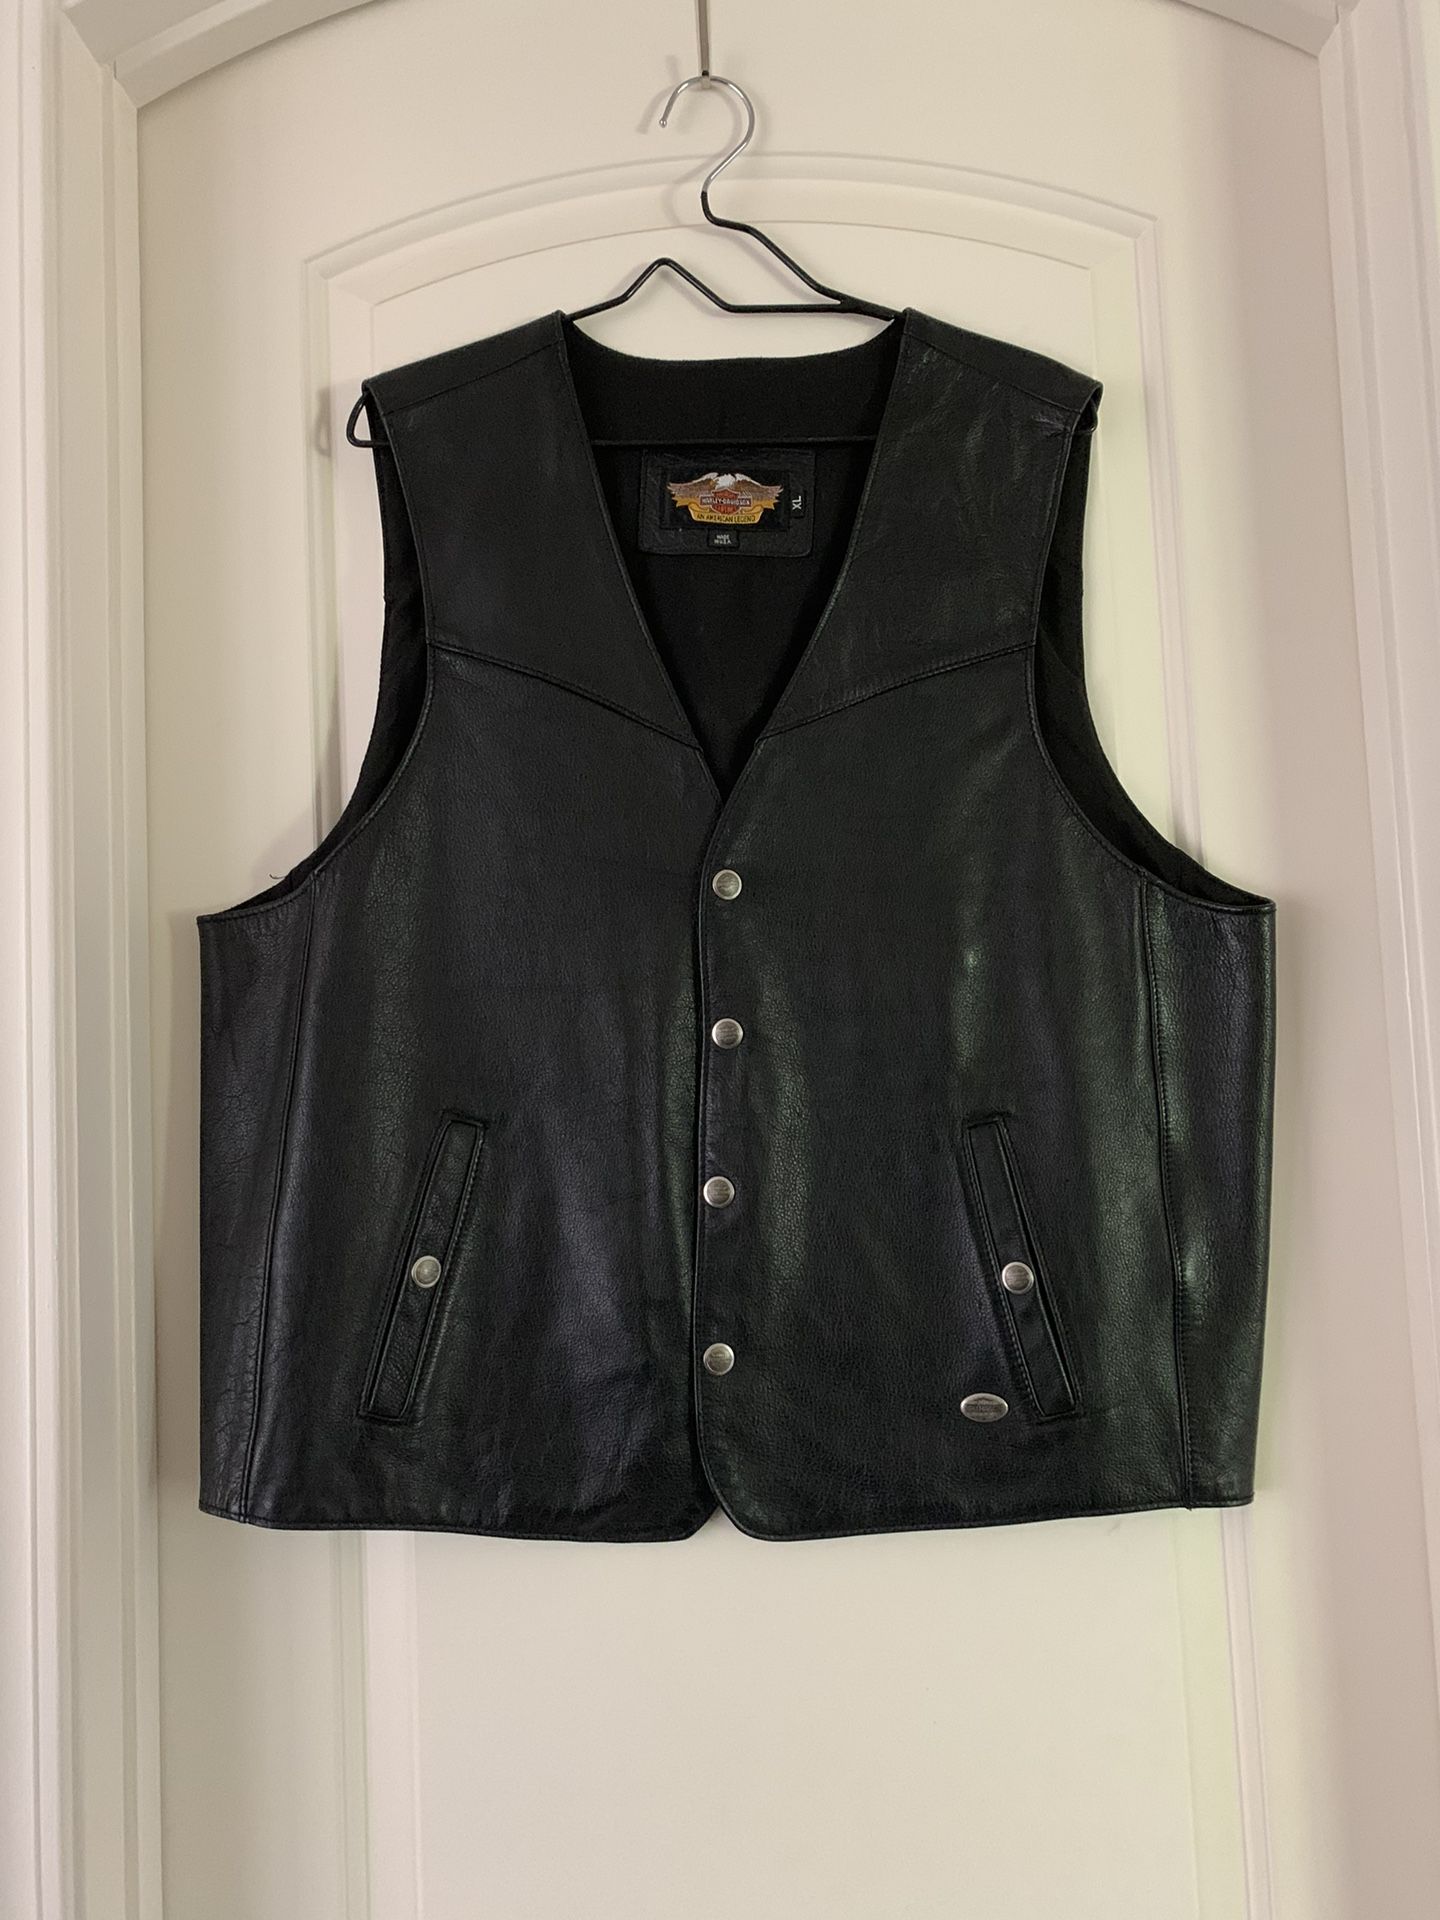 Men’s Harley Davidson Leather Vest Size XL